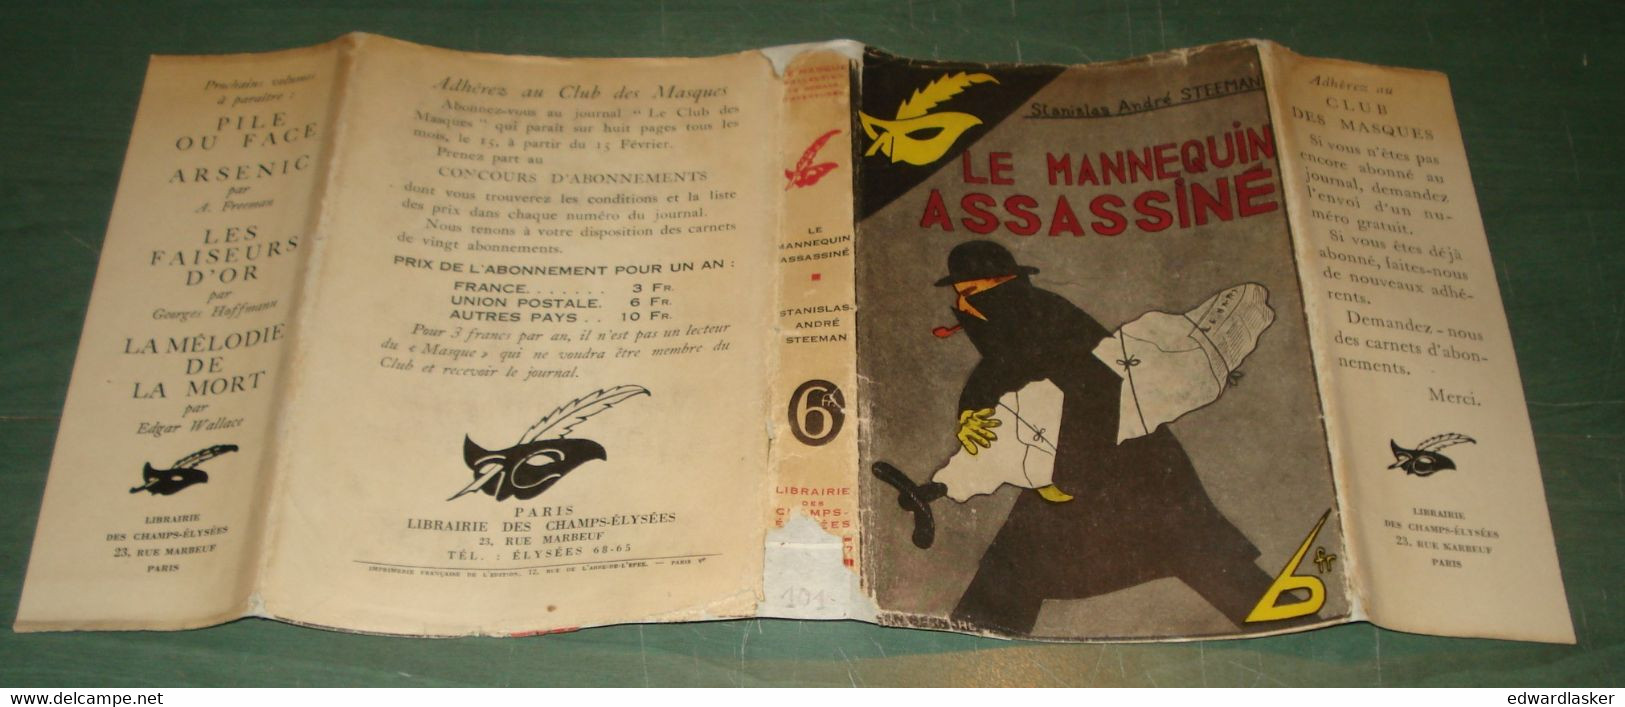 Le MASQUE n°101 : Le mannequin assassiné /S.A. Steeman - jaquette 1932